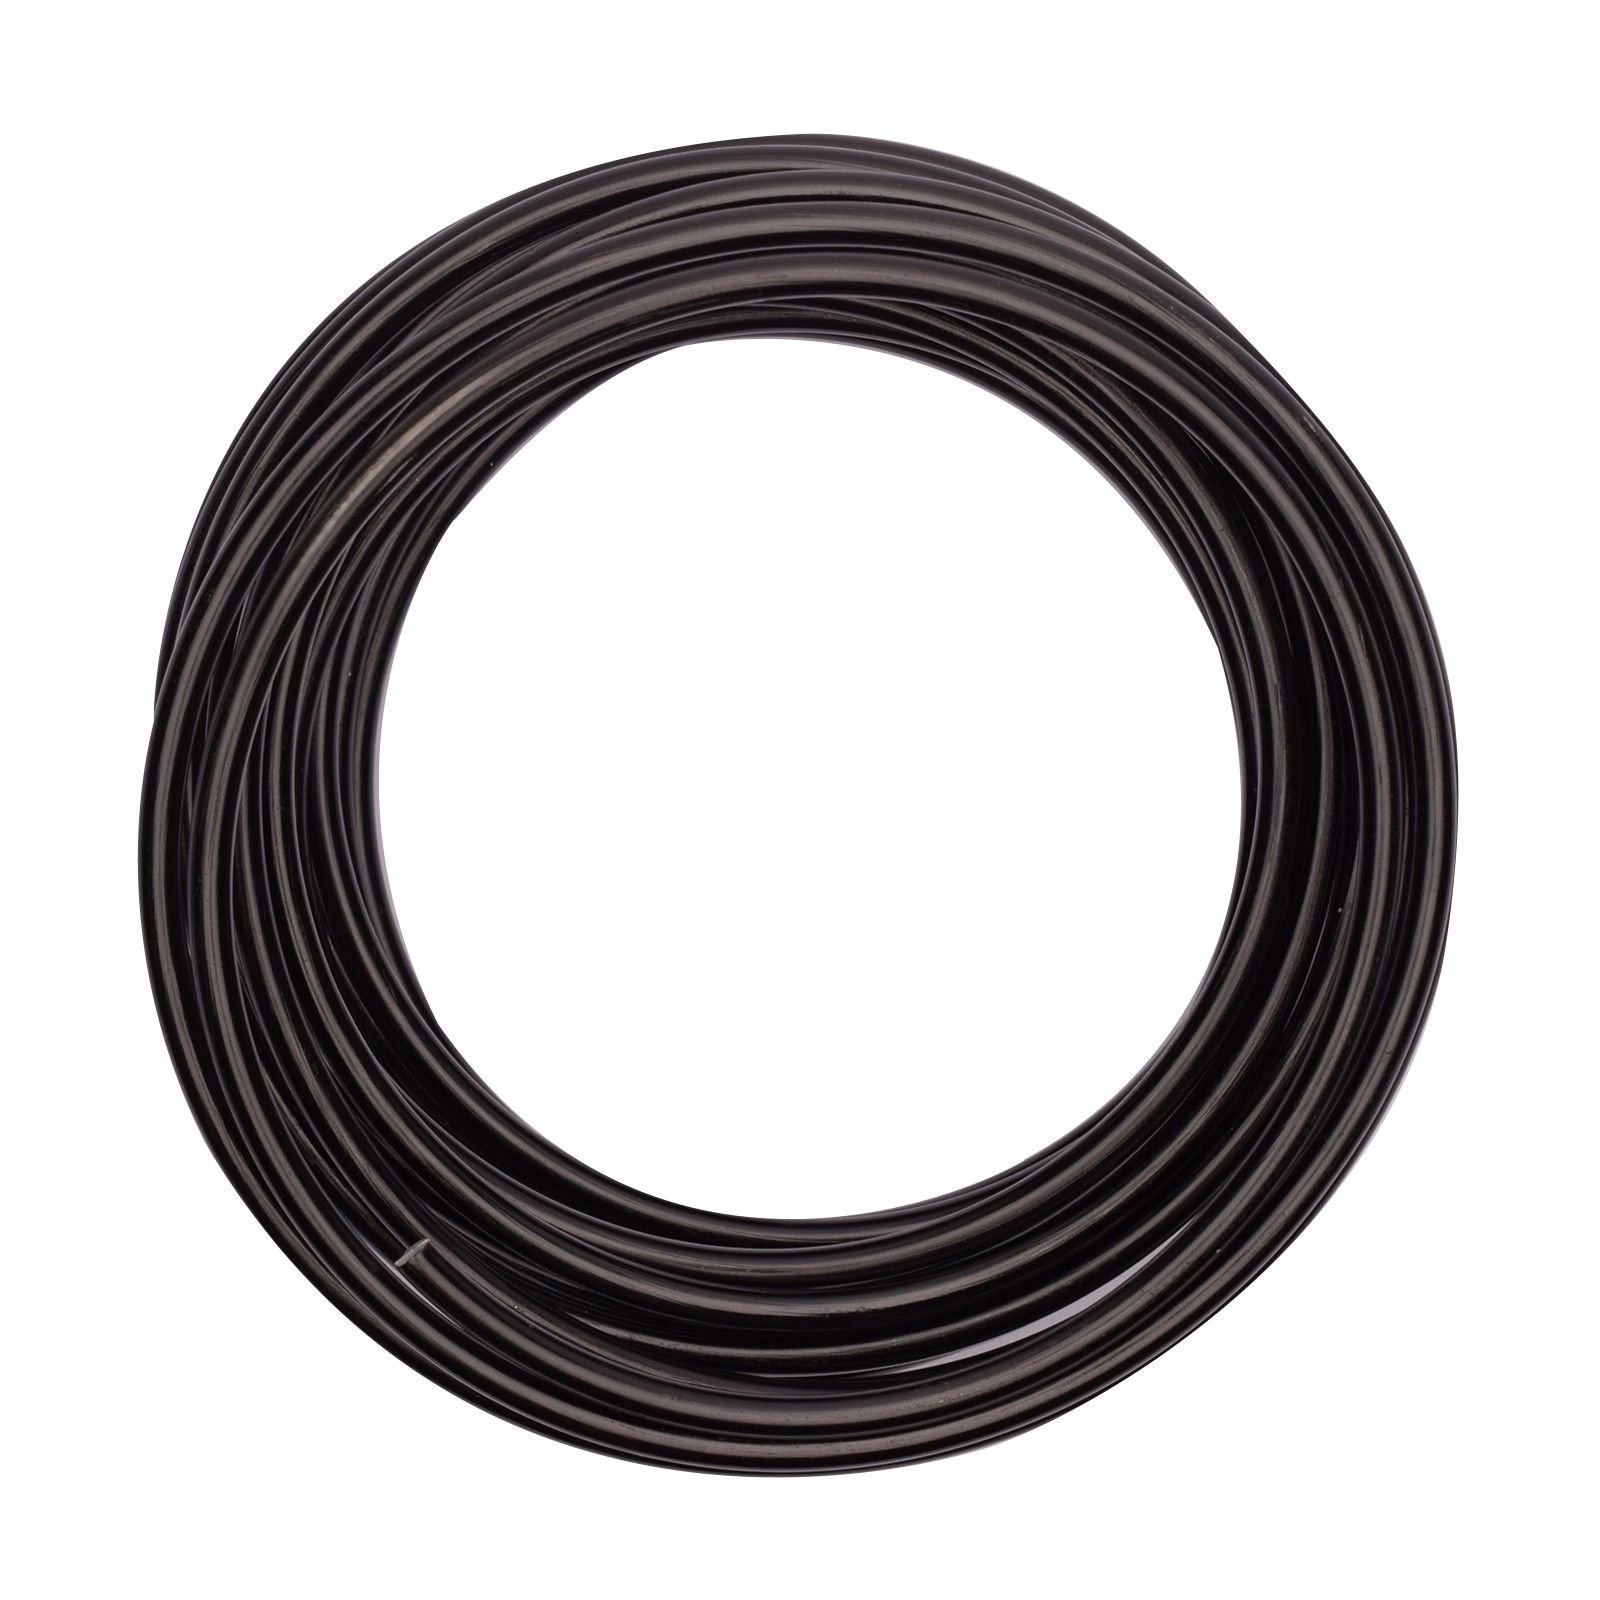 Vaessen Creative • Aluminium wire 5mm 10m Black